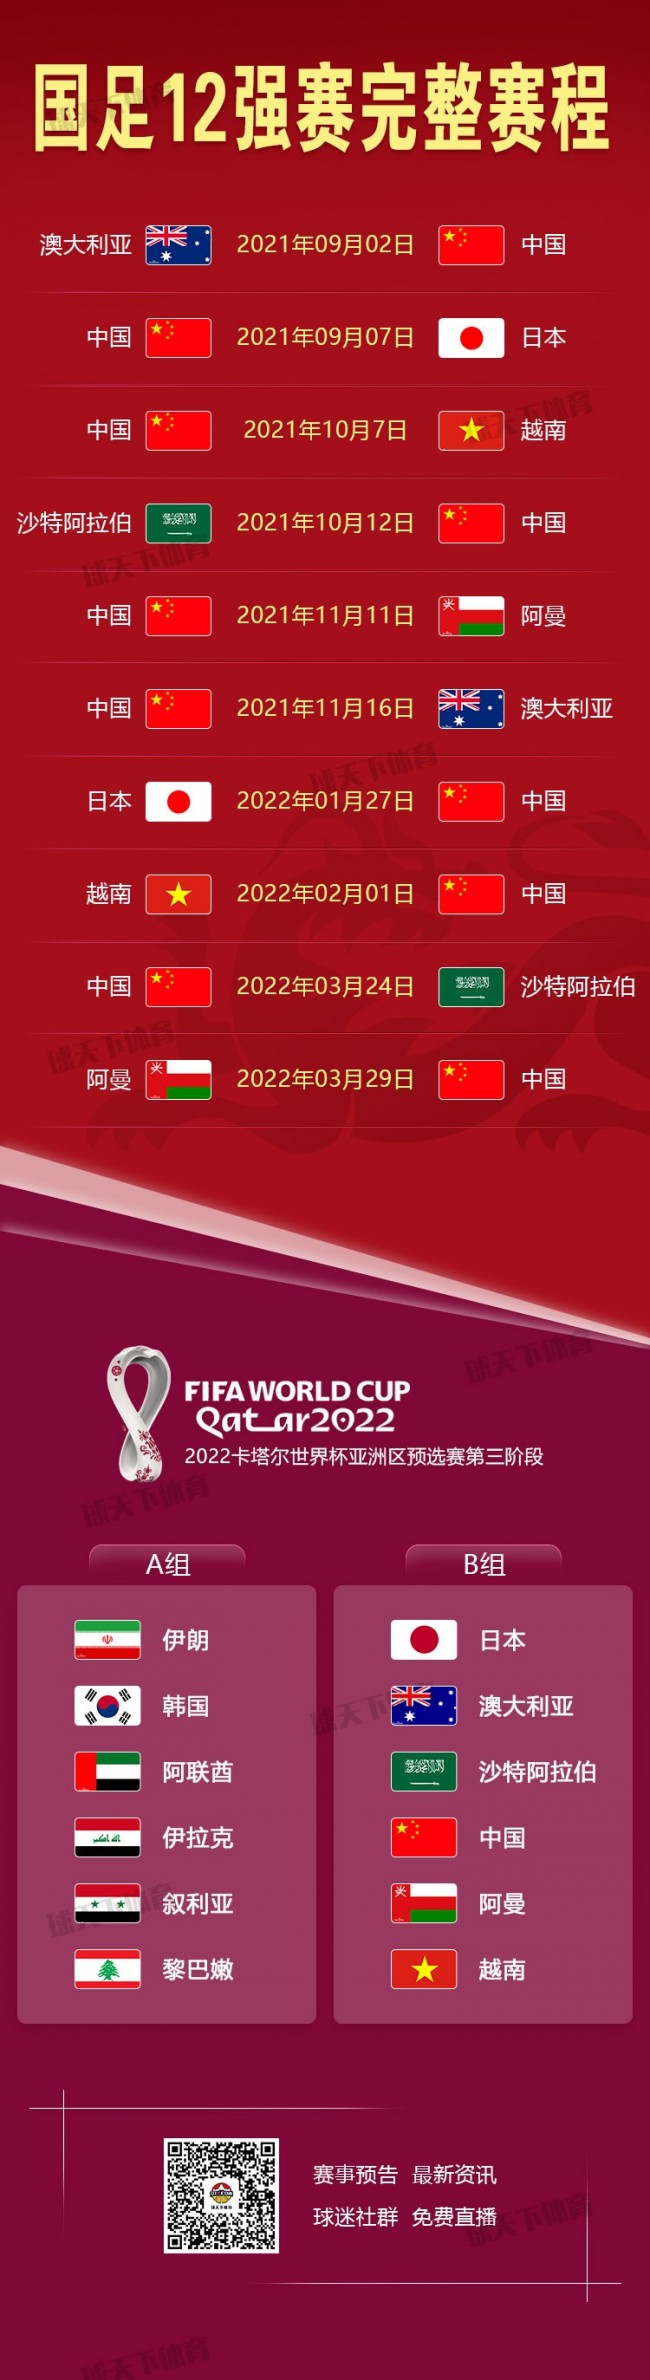 国足世预赛亚洲区12强赛赛程